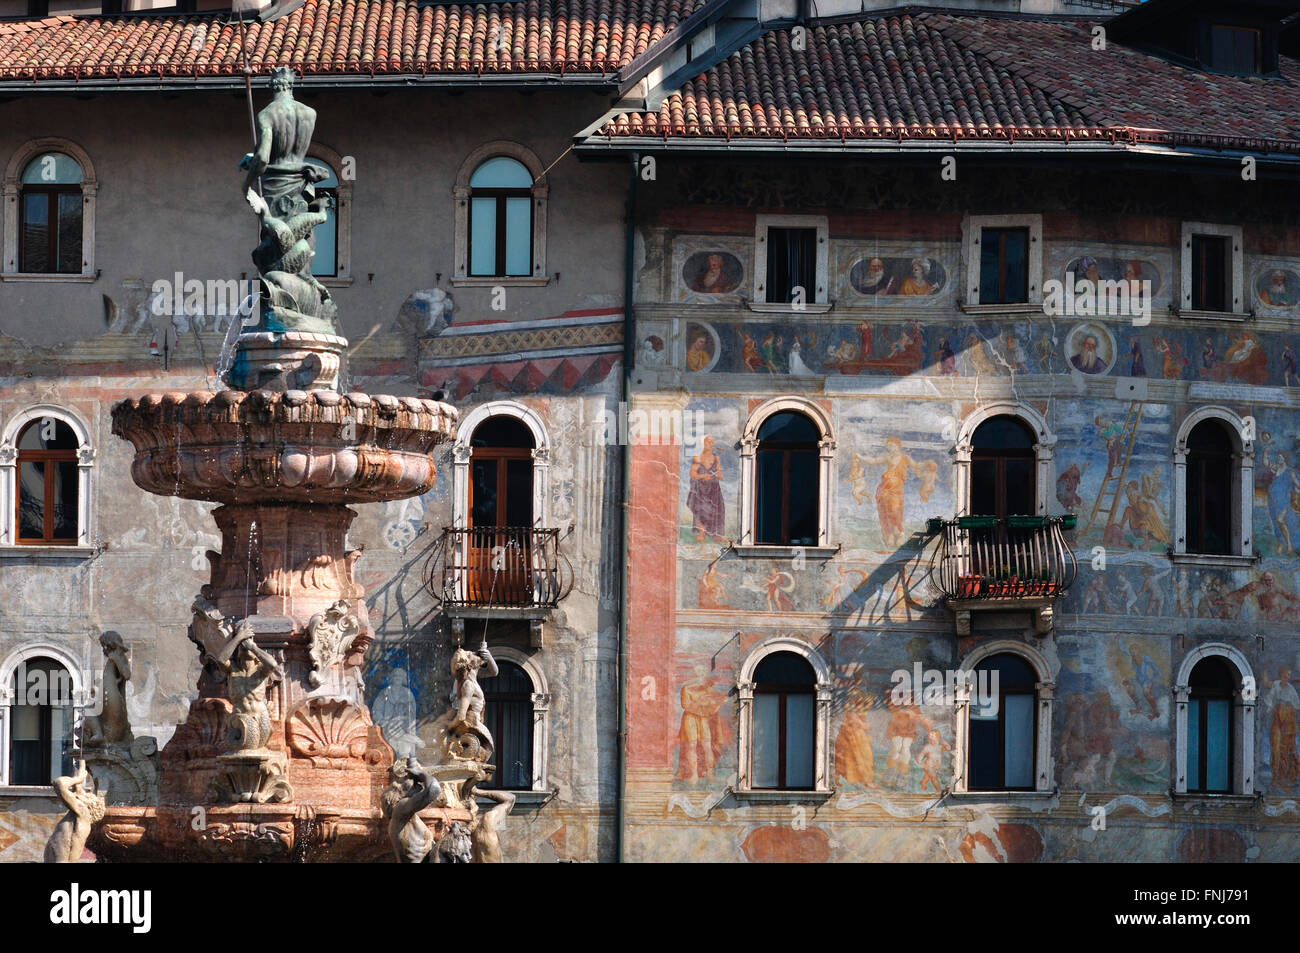 Italy, Trentino Alto Adige, Trento, Duomo square, Neptune Fountain background Casa Cazuffi-Rella fresco by Marcello Fogolino Stock Photo